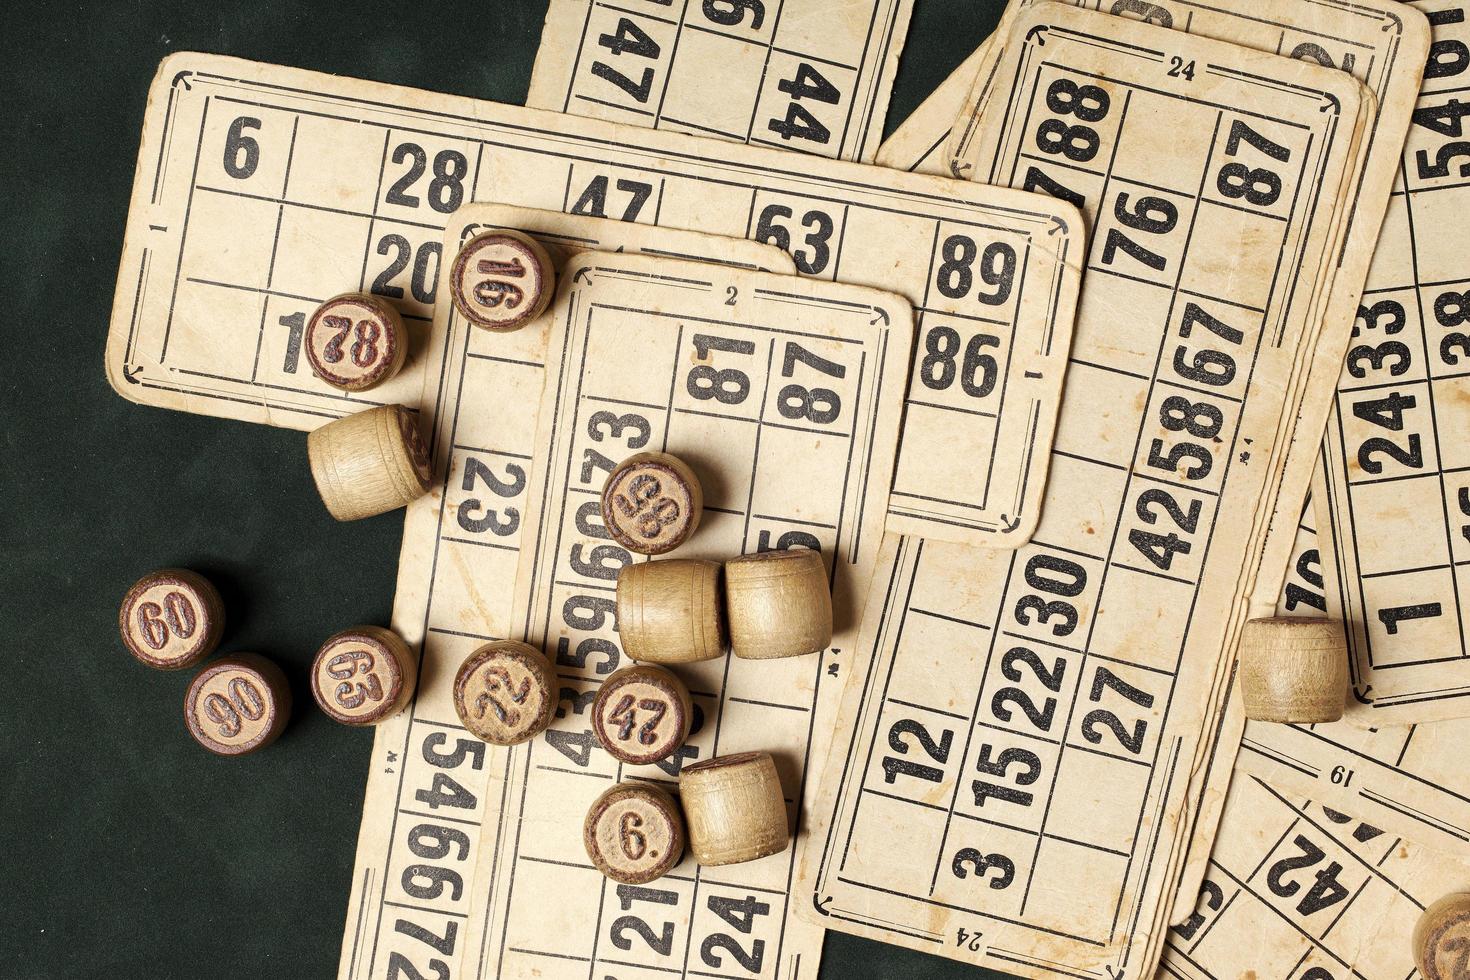 jeu de table bingo. barils de loto en bois avec sac, cartes à jouer pour jeux de loto, jeux pour la famille. photo